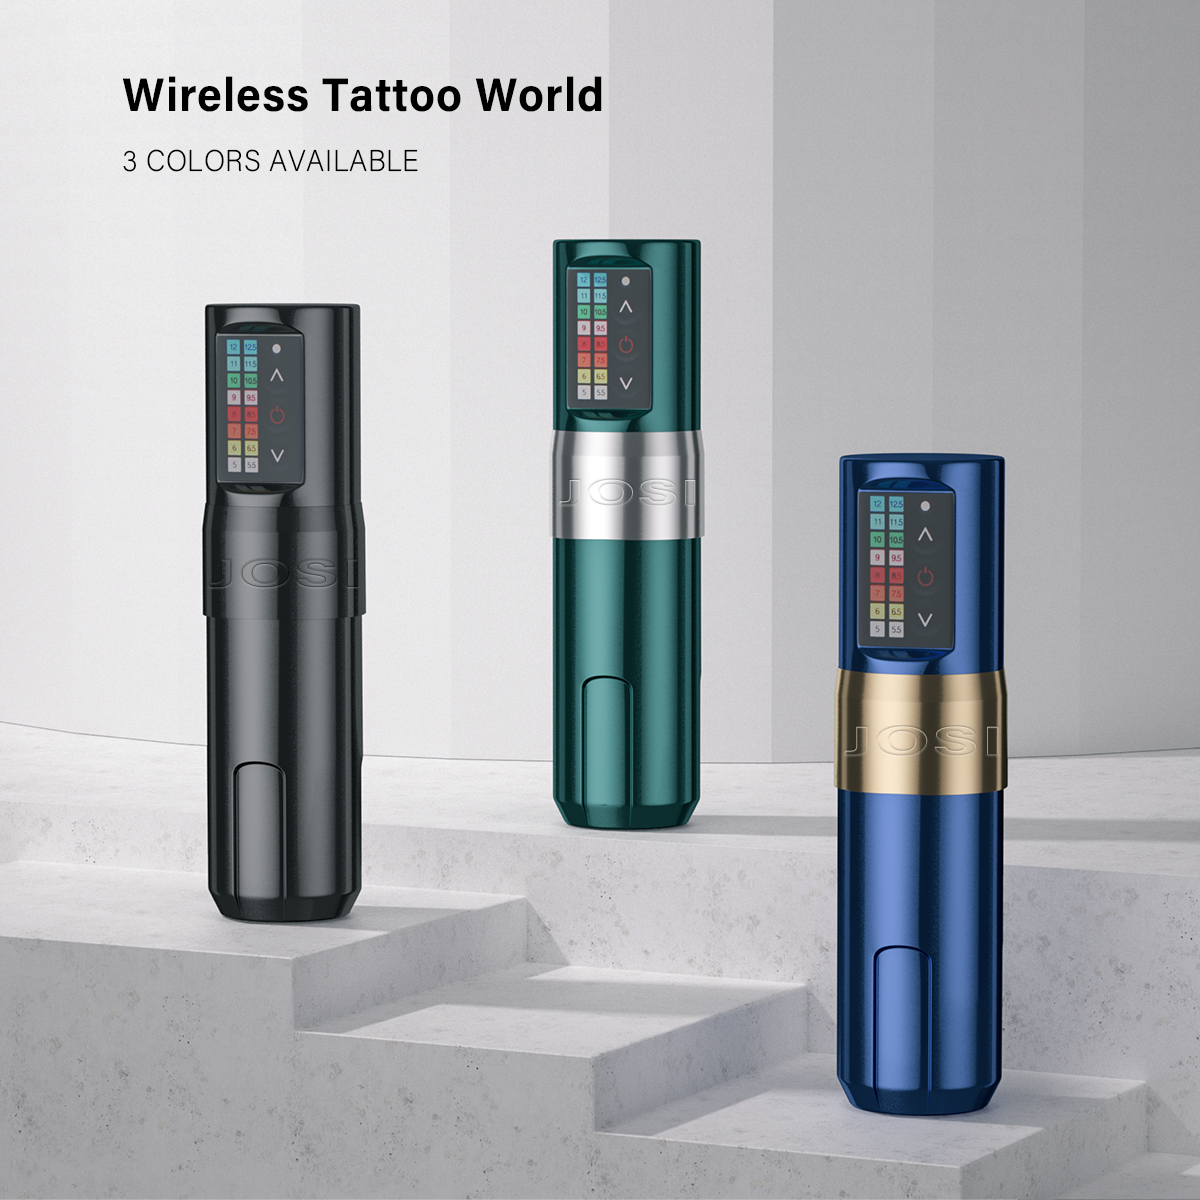 JOSI Wand Wireless Tattoo Machine Pen 2pcs 2400mAh Lithium Battery